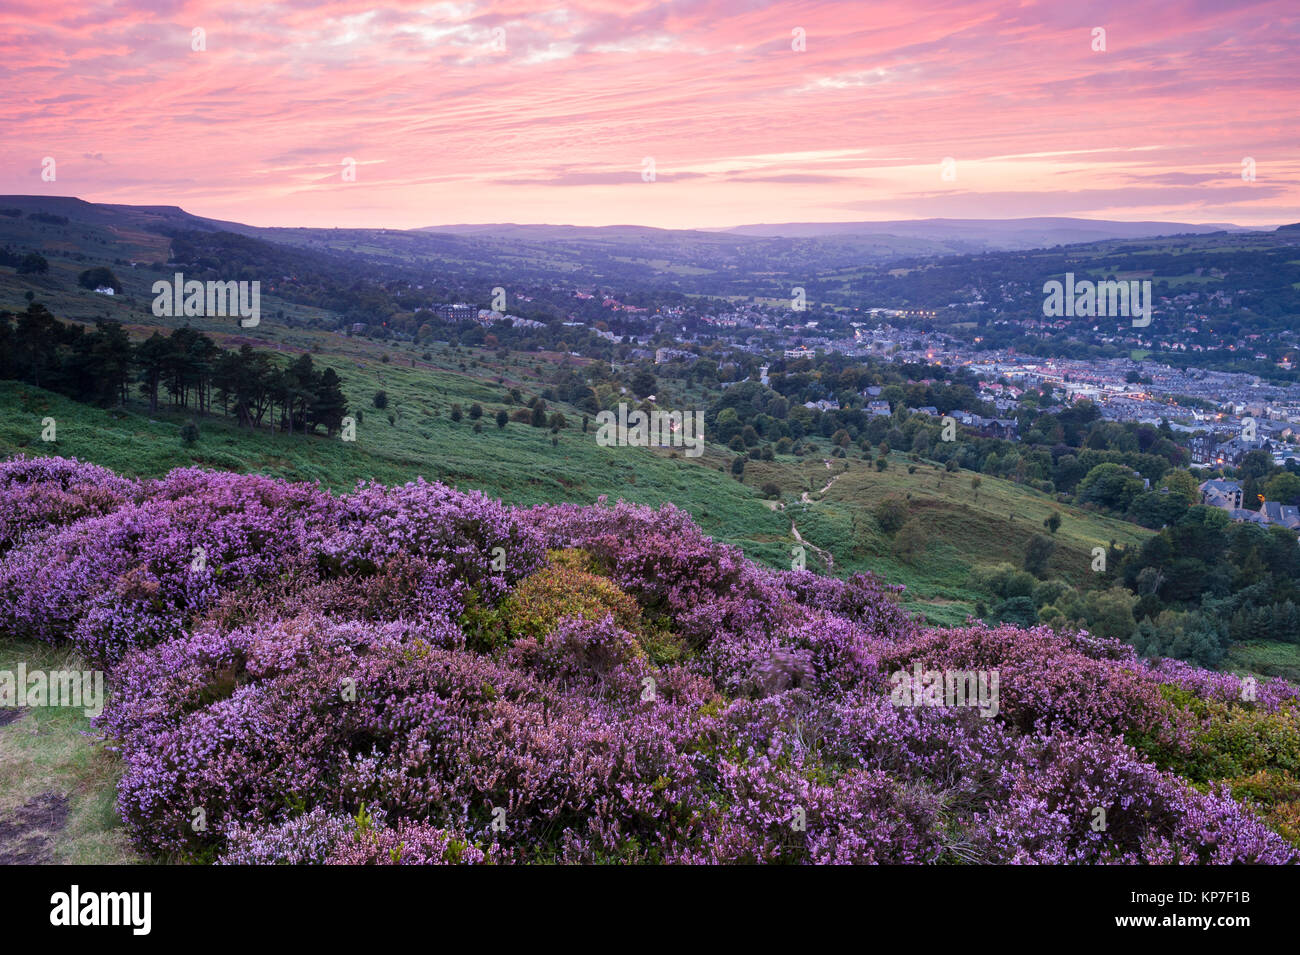 Ciel coucher de soleil rose profond et haute vue de la pittoresque ville de Ilkley Moor niché dans la vallée (purple heather) - Ilkley, Wharfedale, Yorkshire, FR, UK Banque D'Images